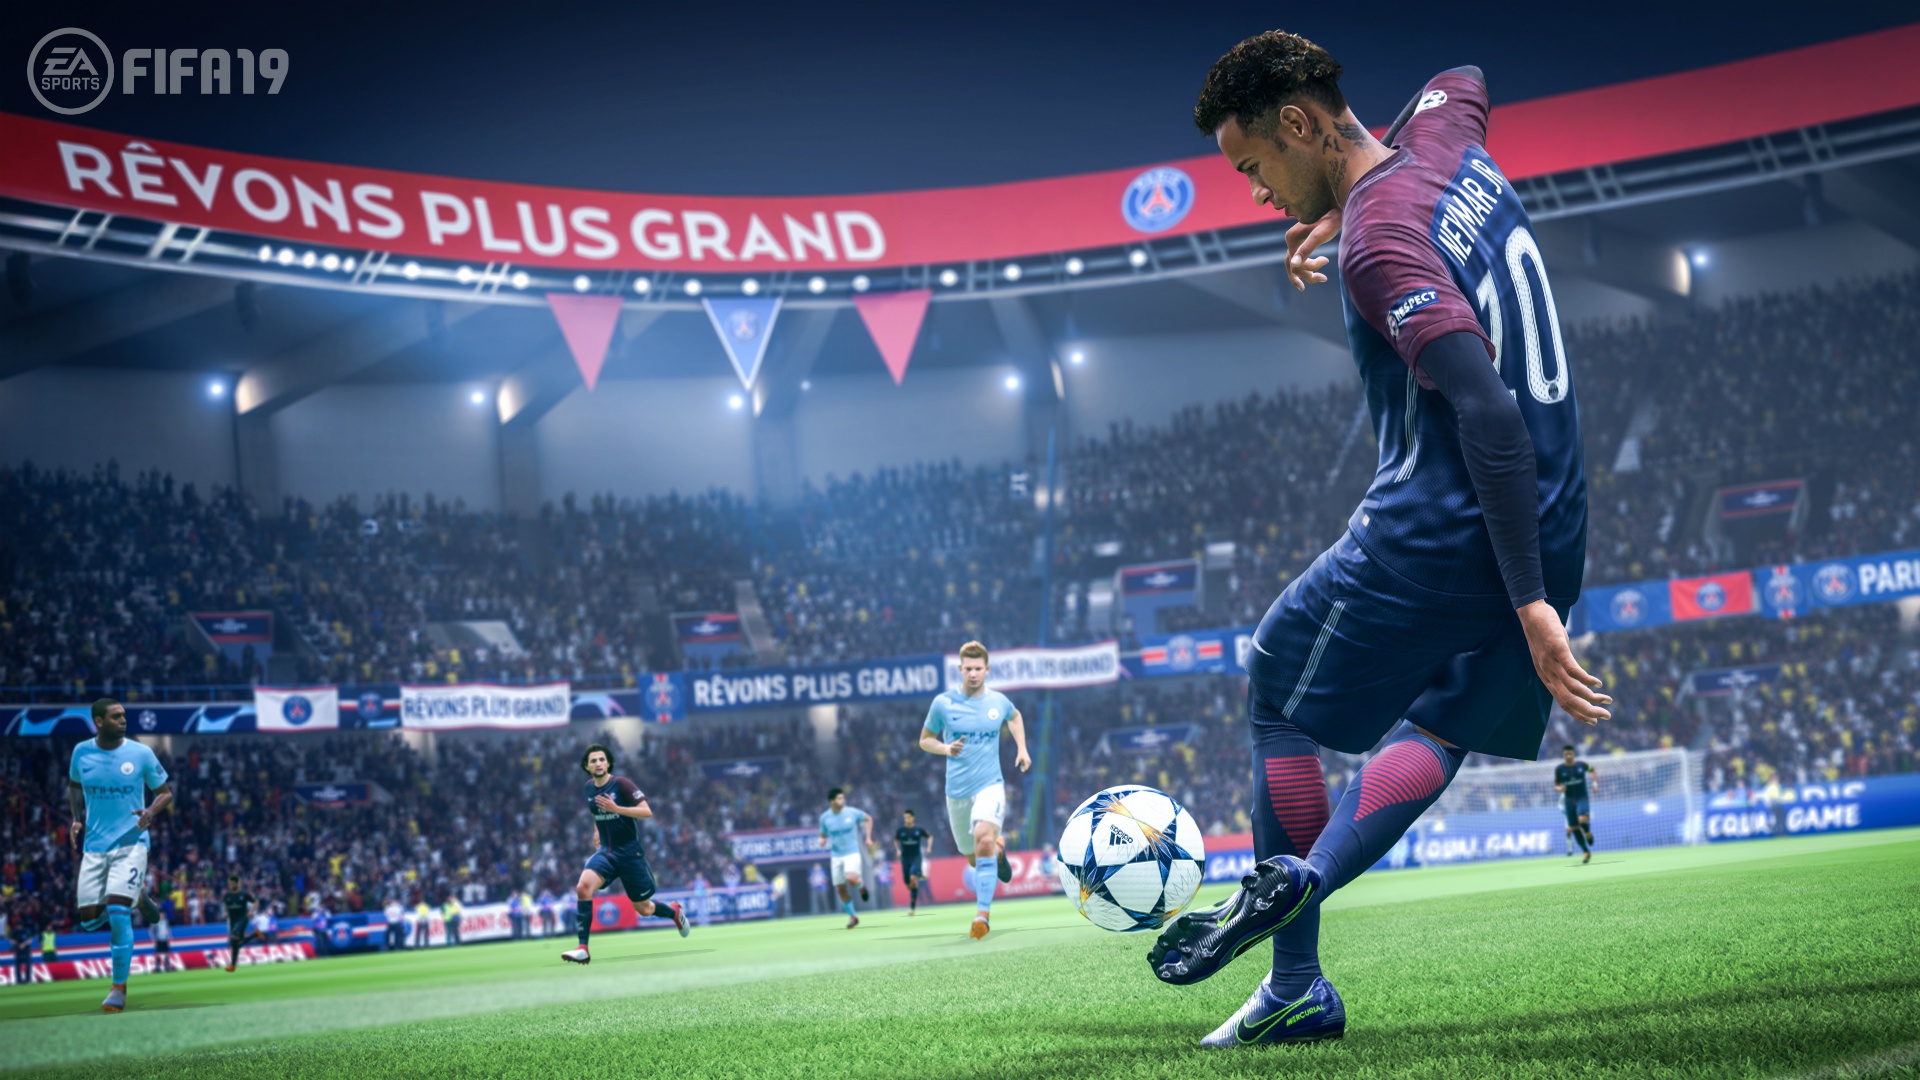 FIFA 19: Neymar, una de las estrellas